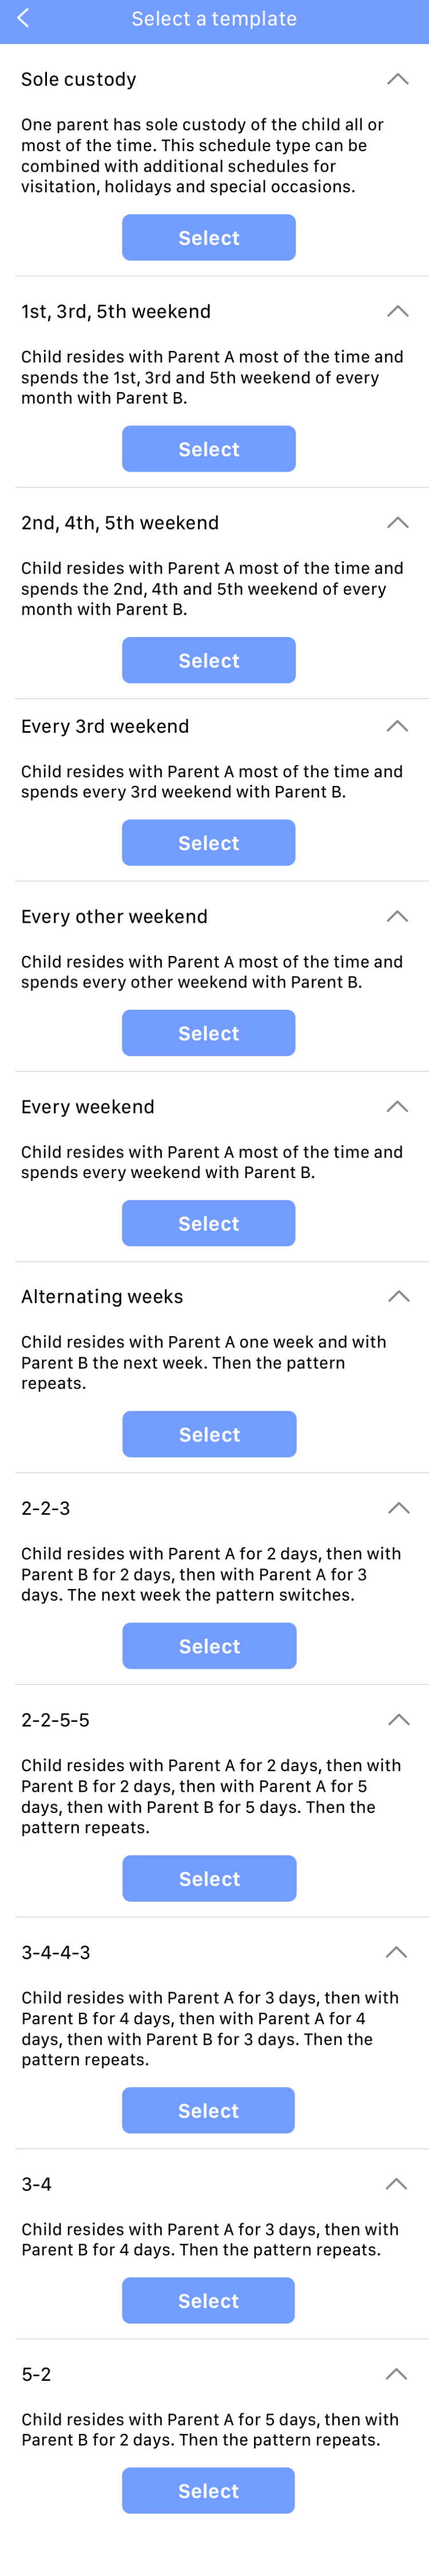 WeParent custody schedule templates descriptions